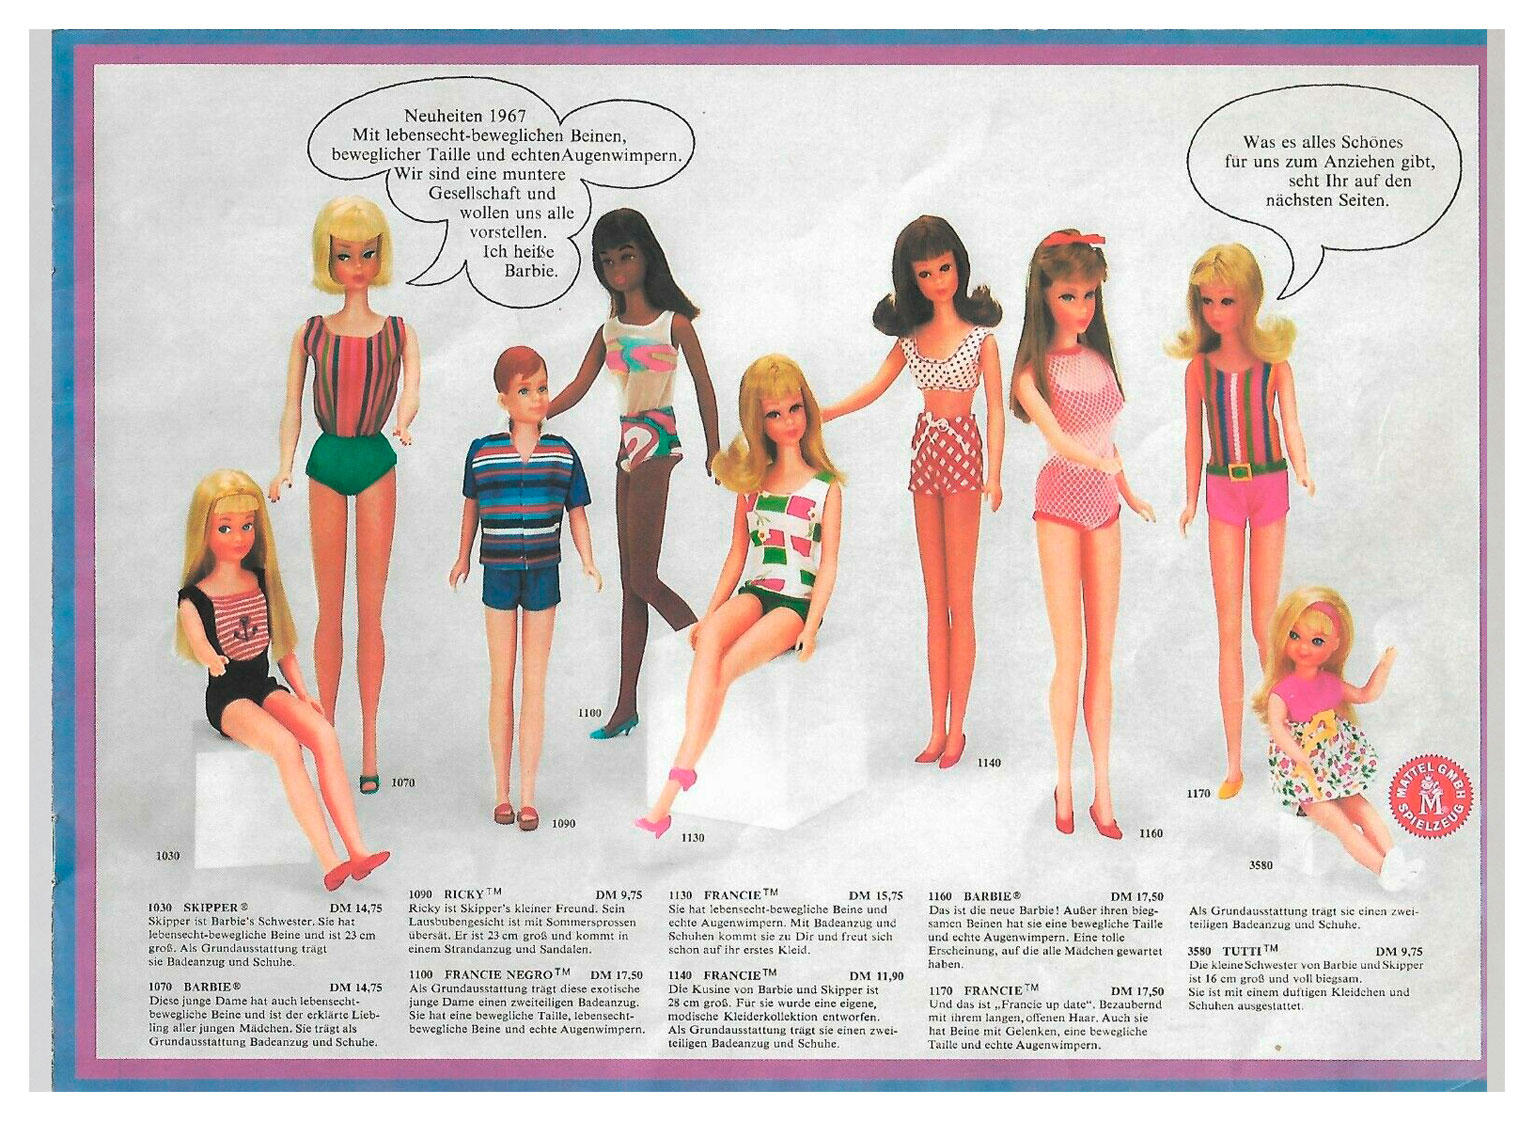 From 1967 German Wunderbare Welt der Barbie booklet